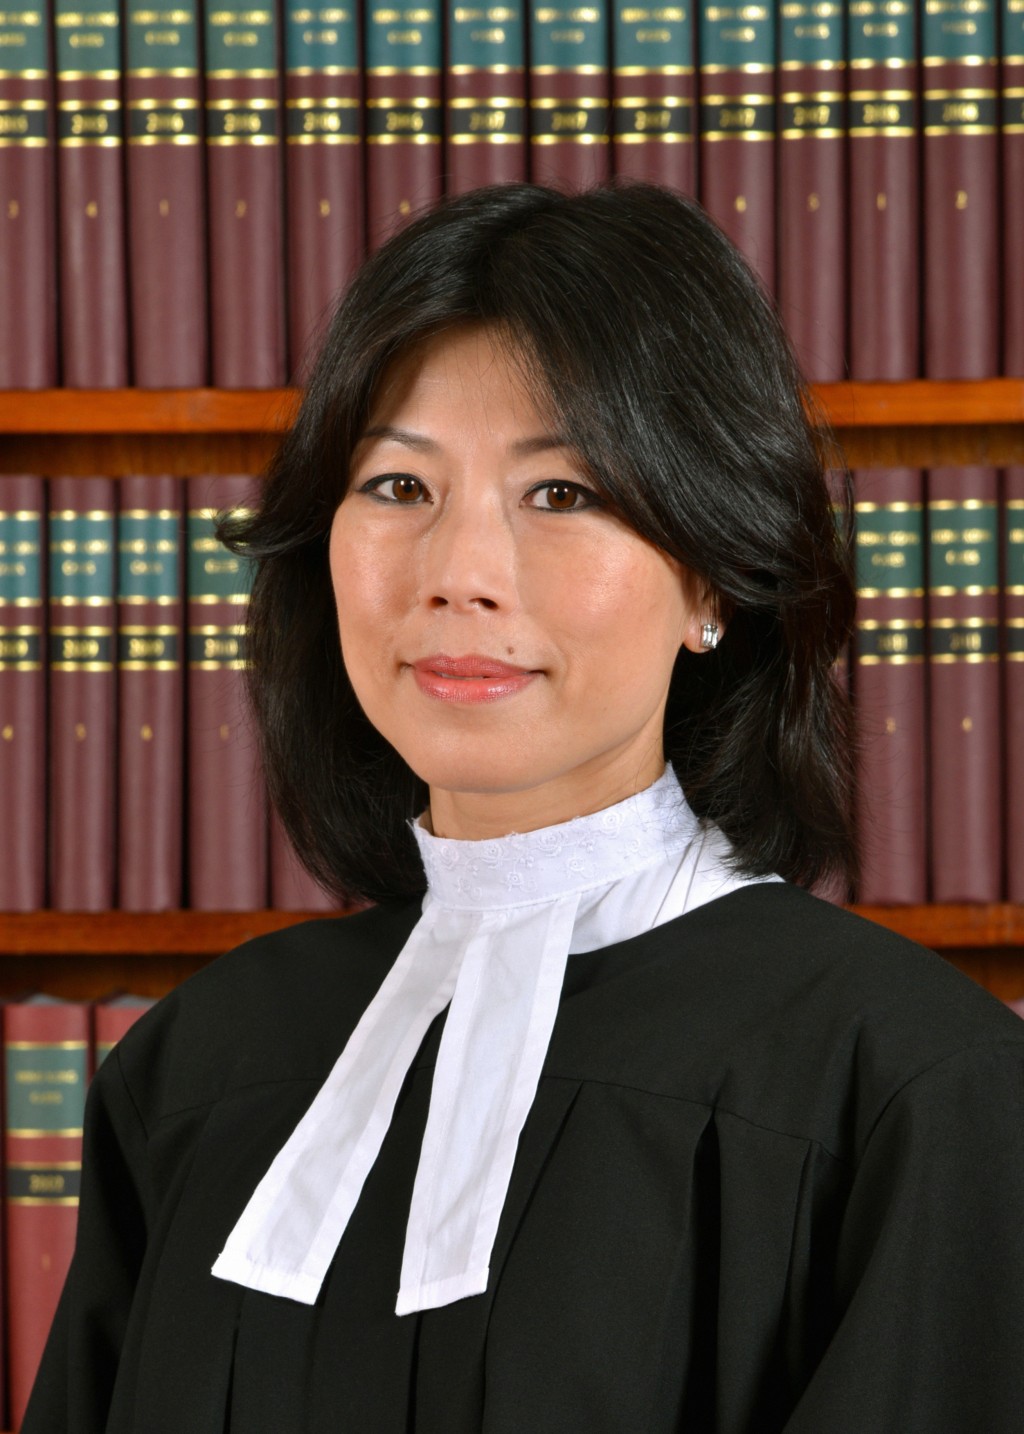 署理主任裁判官劉綺雲把案件押後至2月1日判刑，以待為被告索取社會服務令報告，其間被告獲准保釋候訊。資料圖片